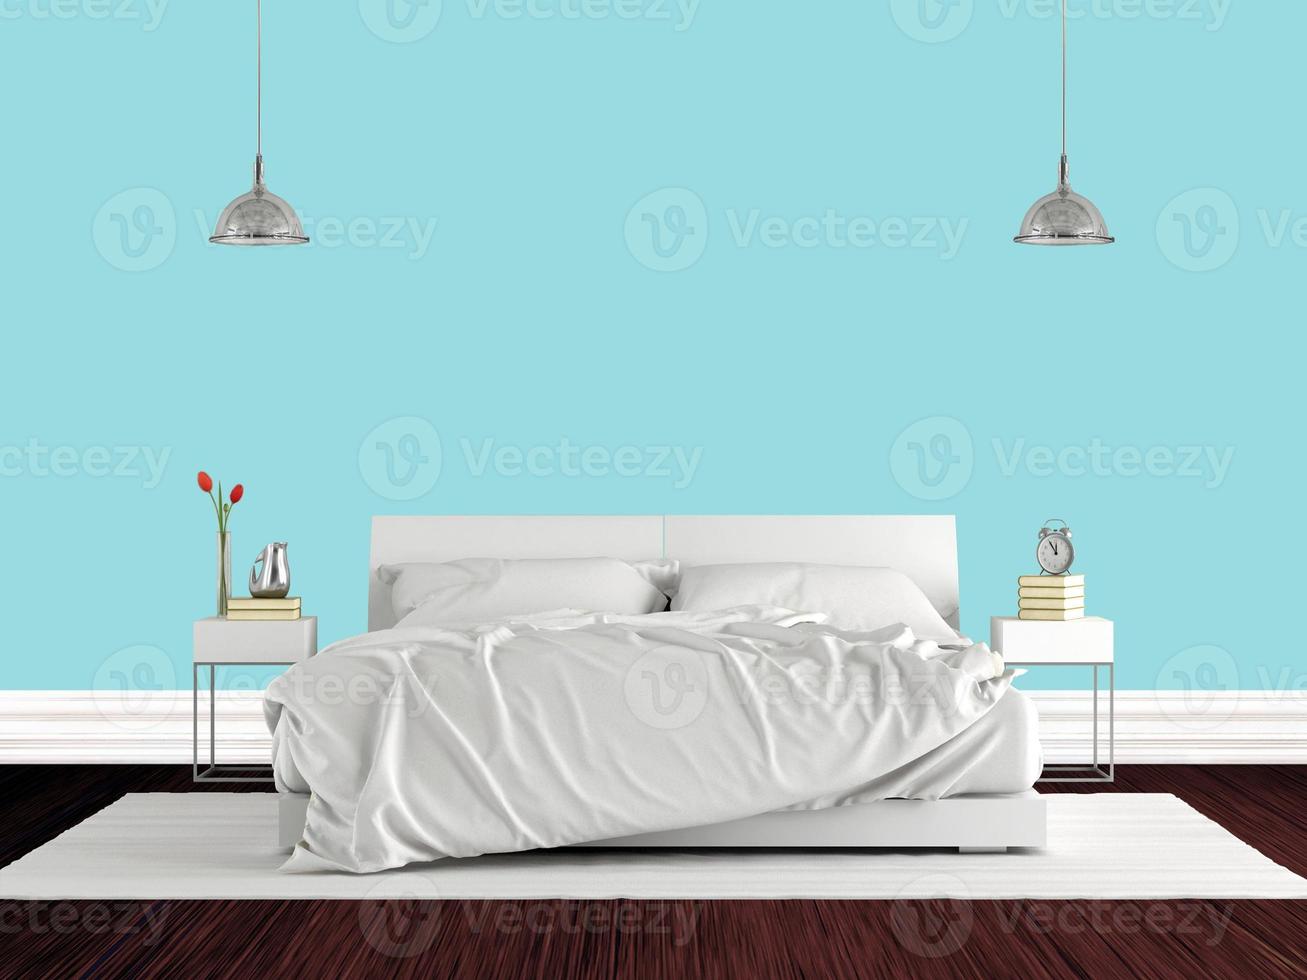 quarto principal minimalista com cama de casal contra parede azul brilhante - renderização em 3d foto